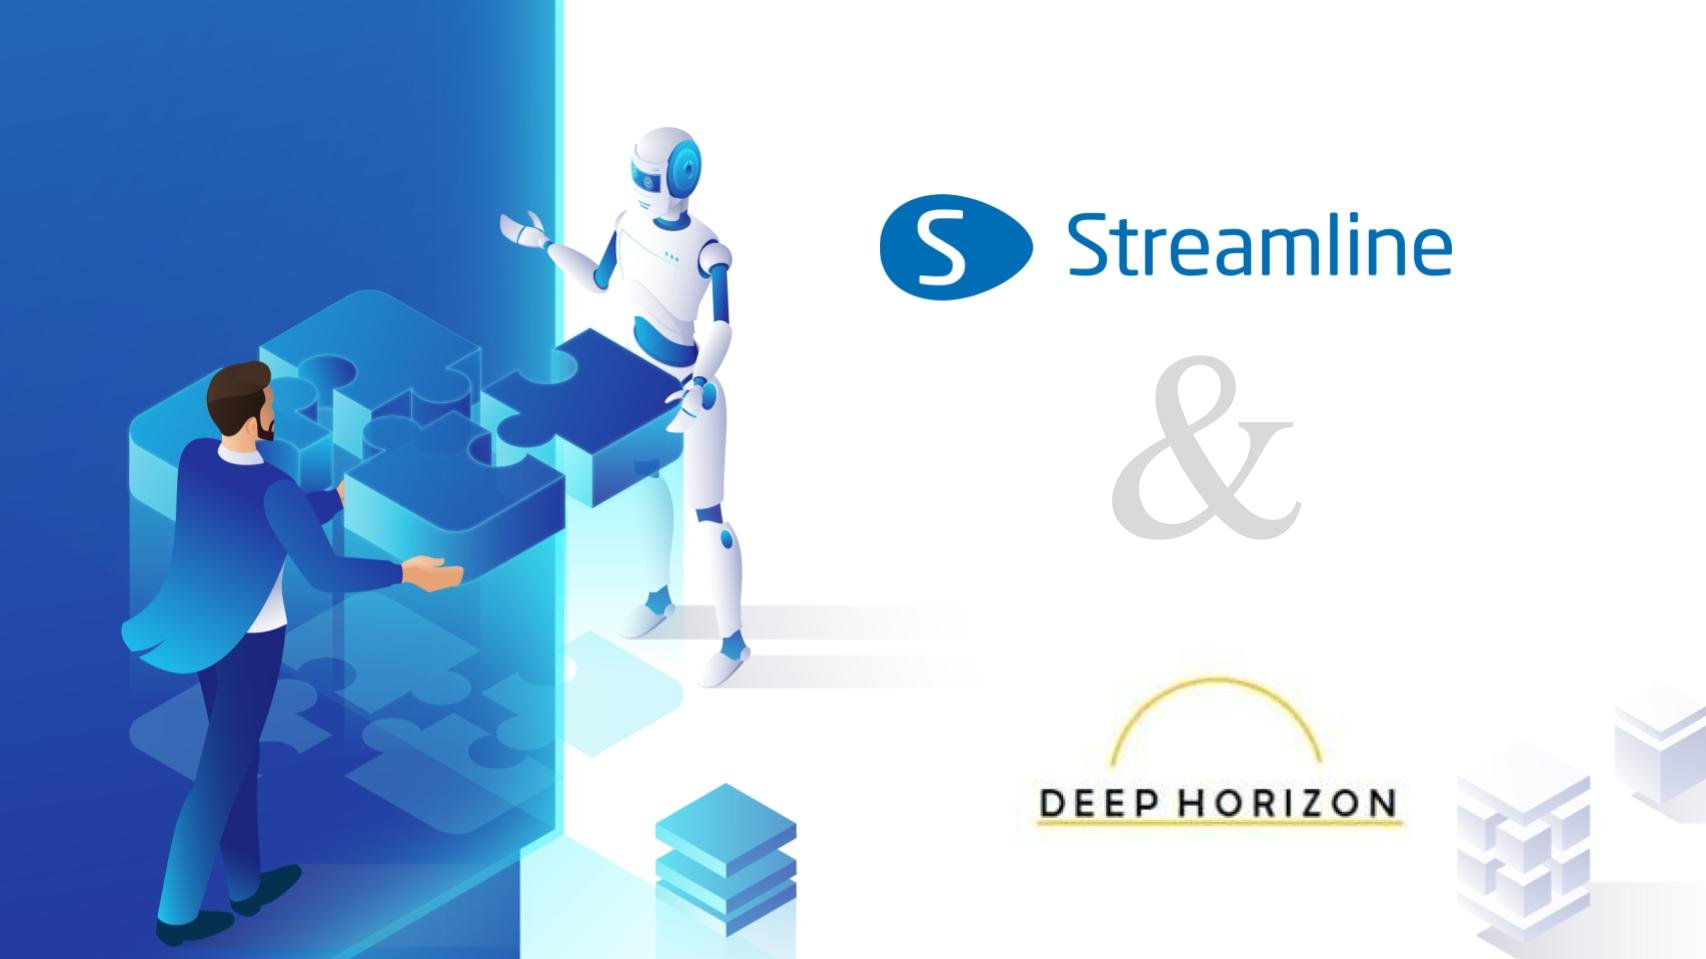 GMDH Streamline arbeitet mit Deep Horizon Solutions zusammen, um die Widerstandsfähigkeit der Lieferkette zu stärken